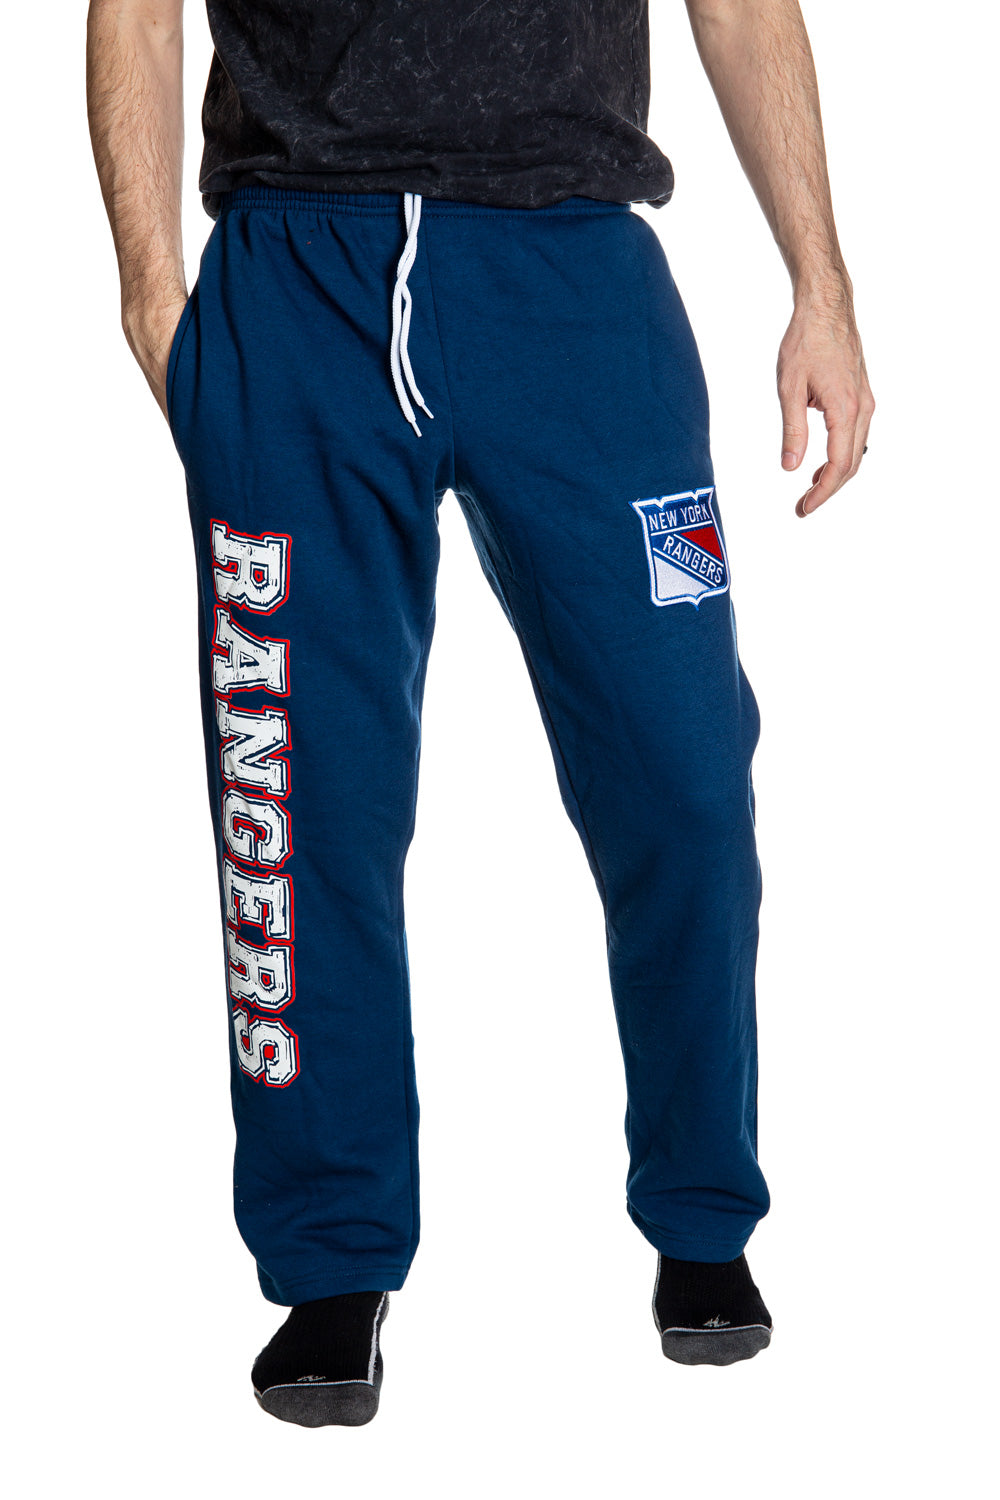 New York Rangers Premium Fleece Sweatpants Front View.